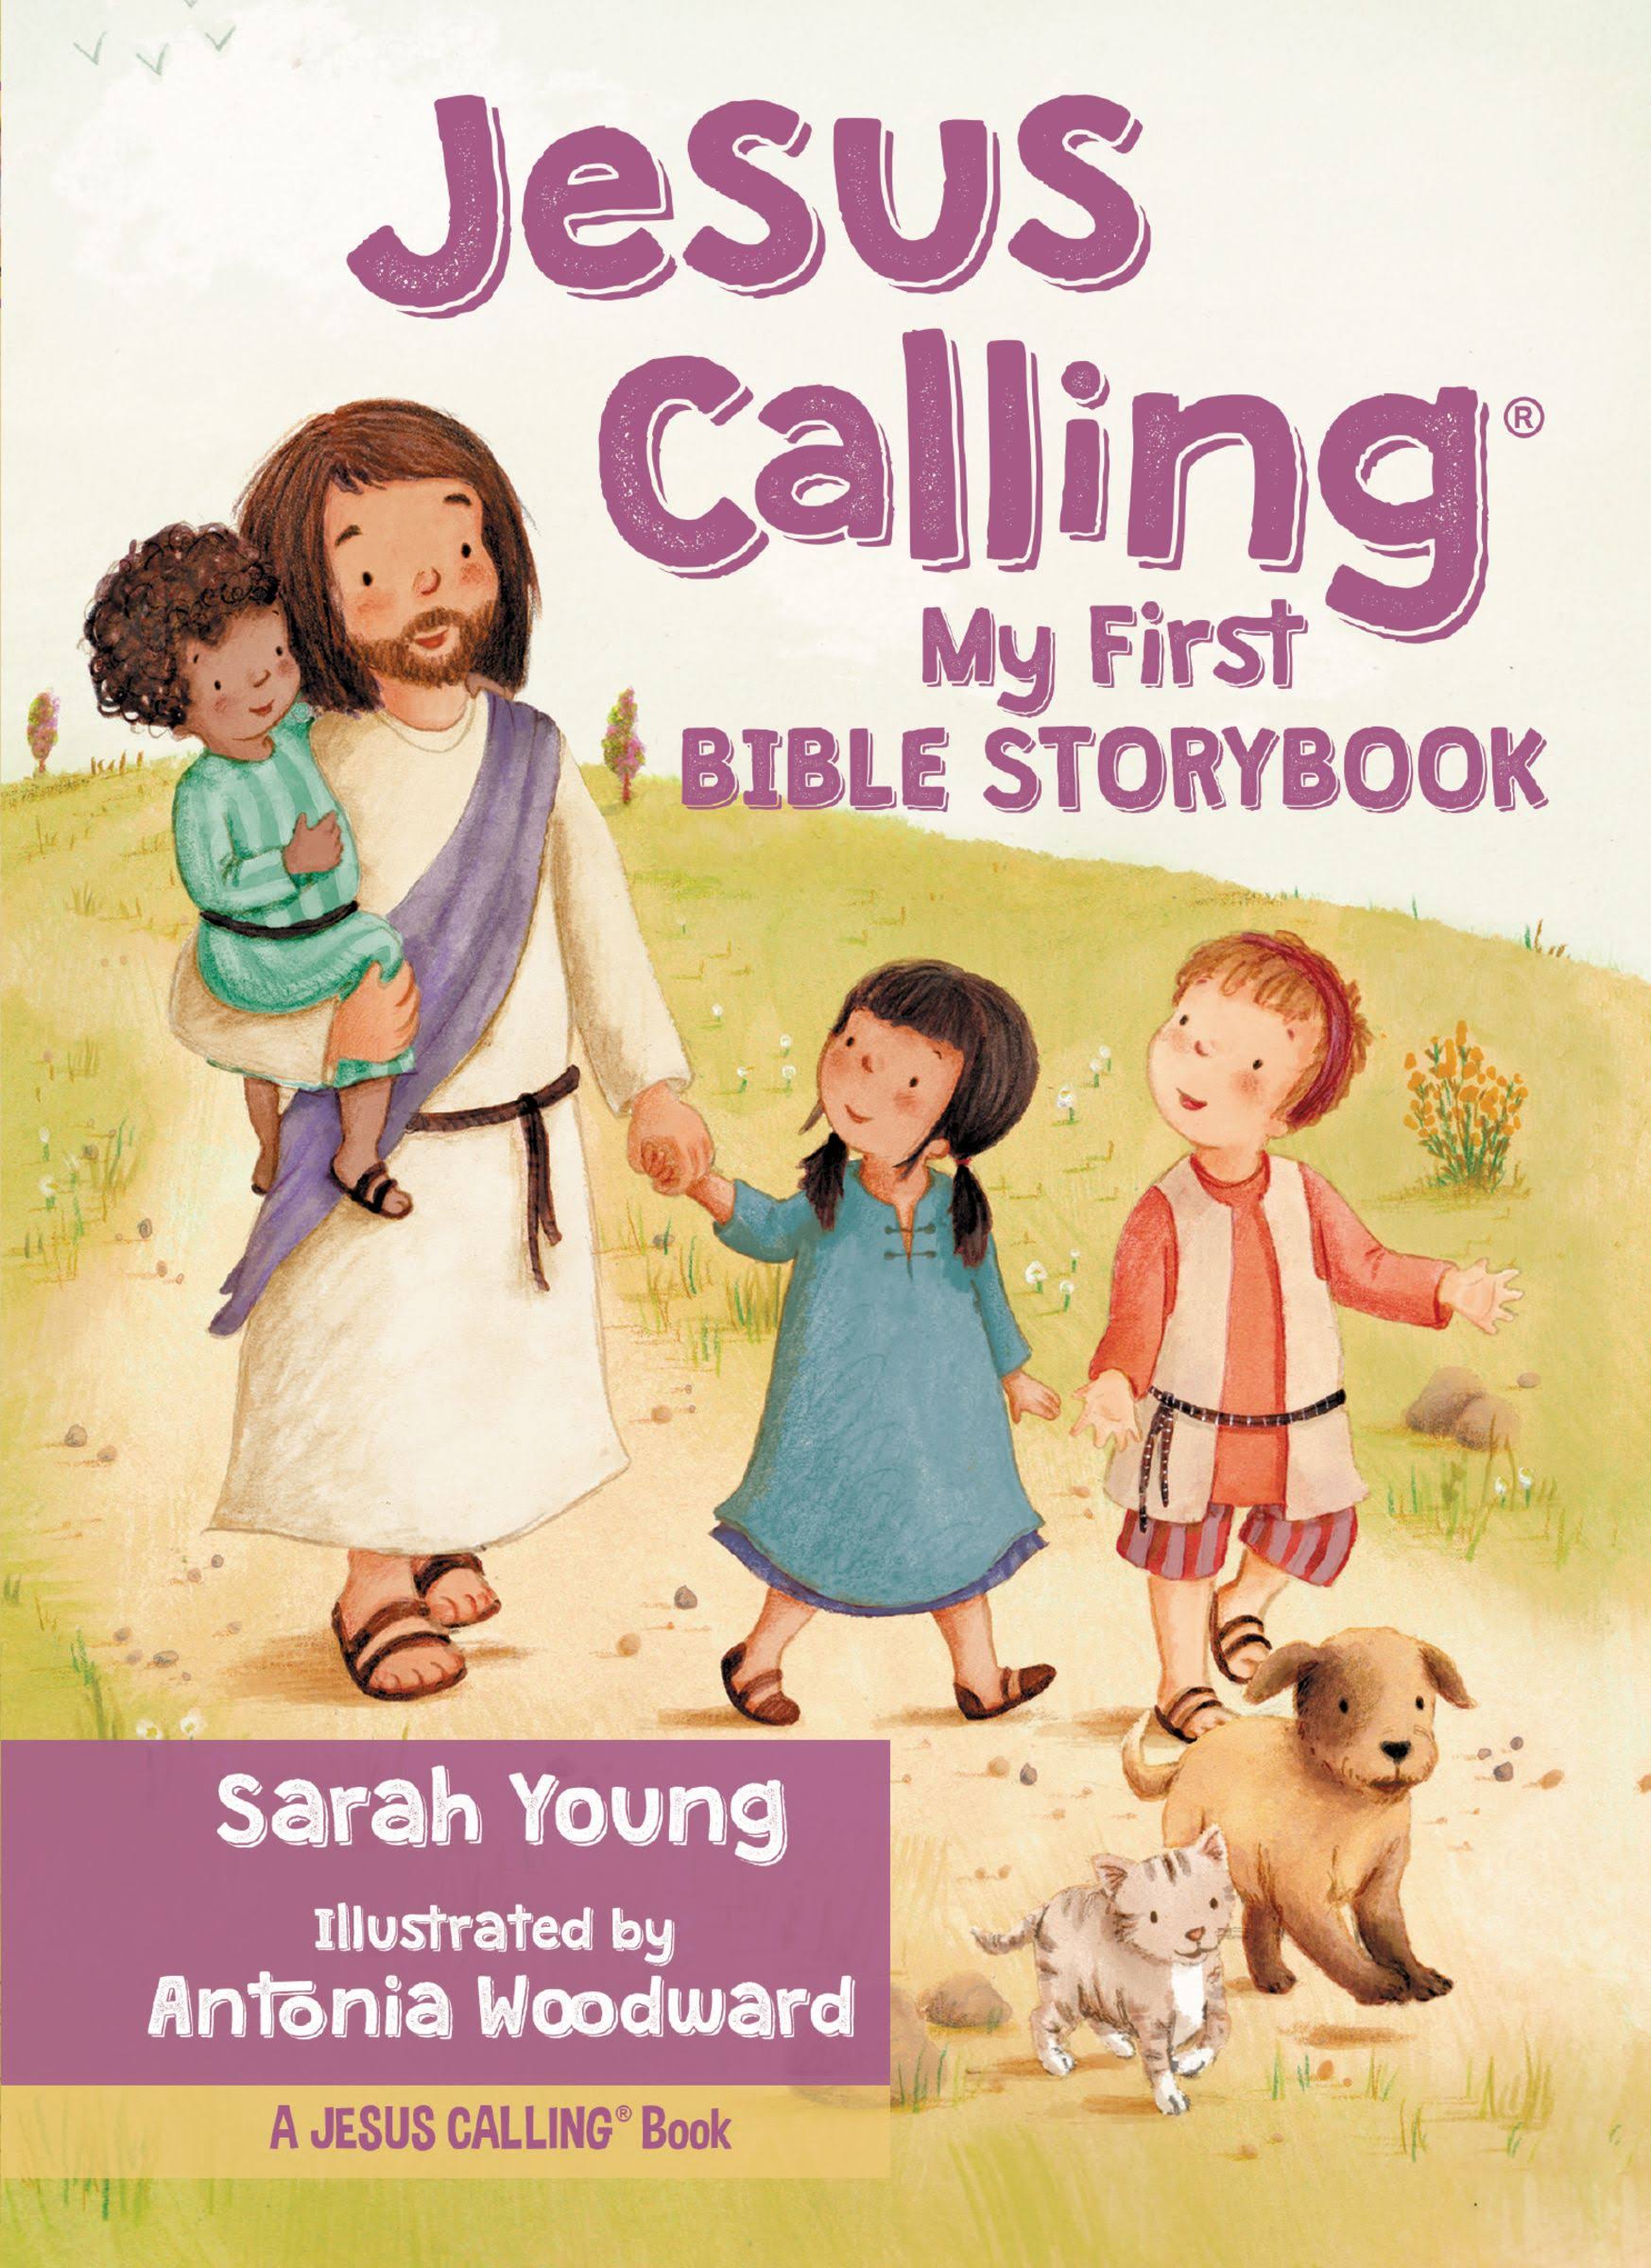 Jesus Calling: My First Bible Storybook - Sarah Young